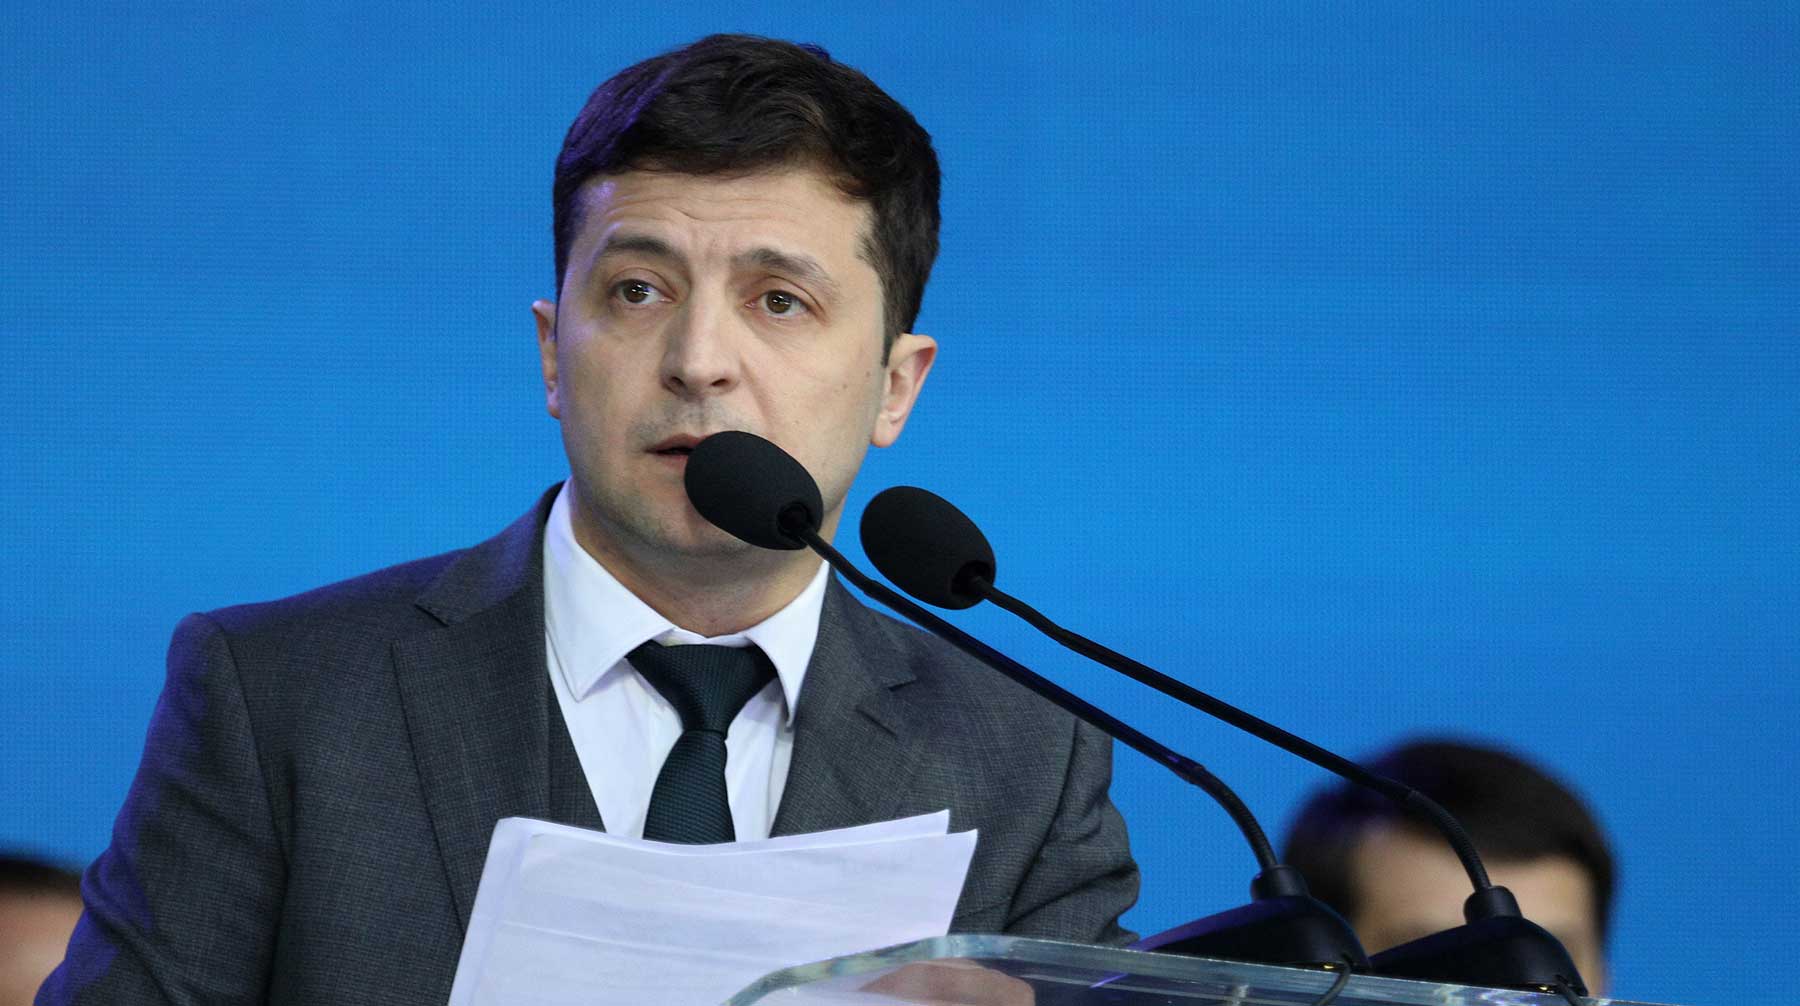 Суд повторно рассмотрит иск о запрете говорить не по-украински для Зеленского